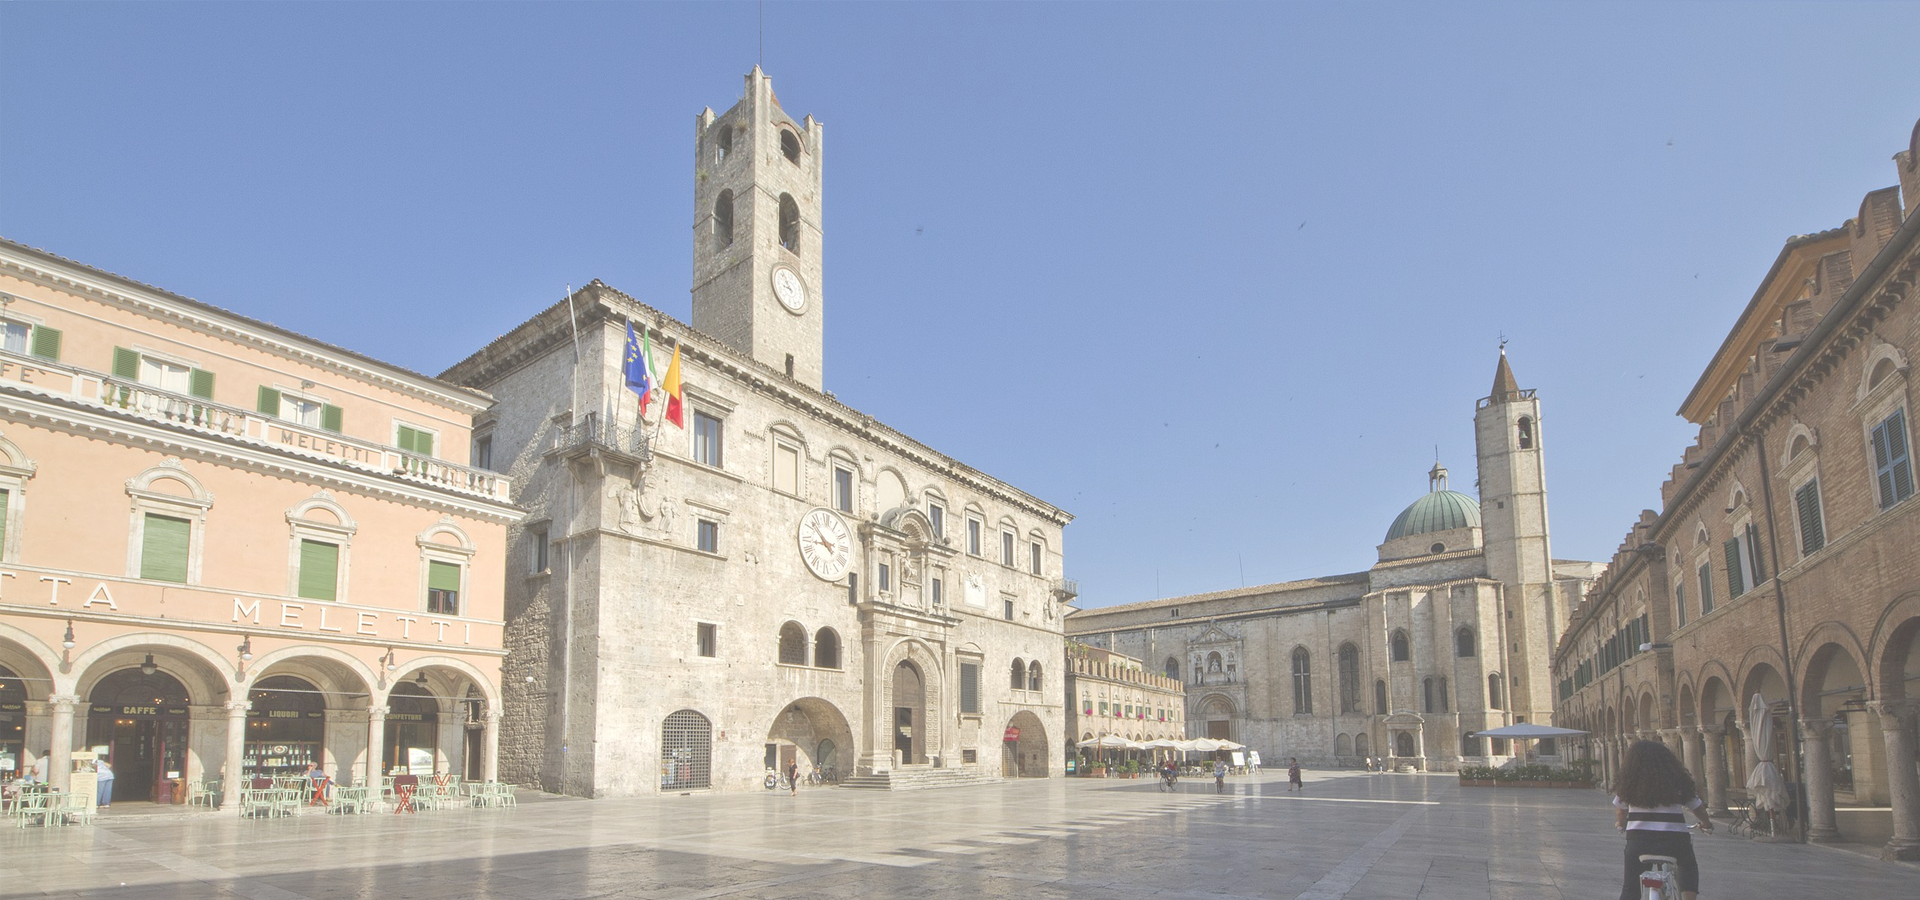 <b>Ascoli Piceno, Marche Region, Italy</b>